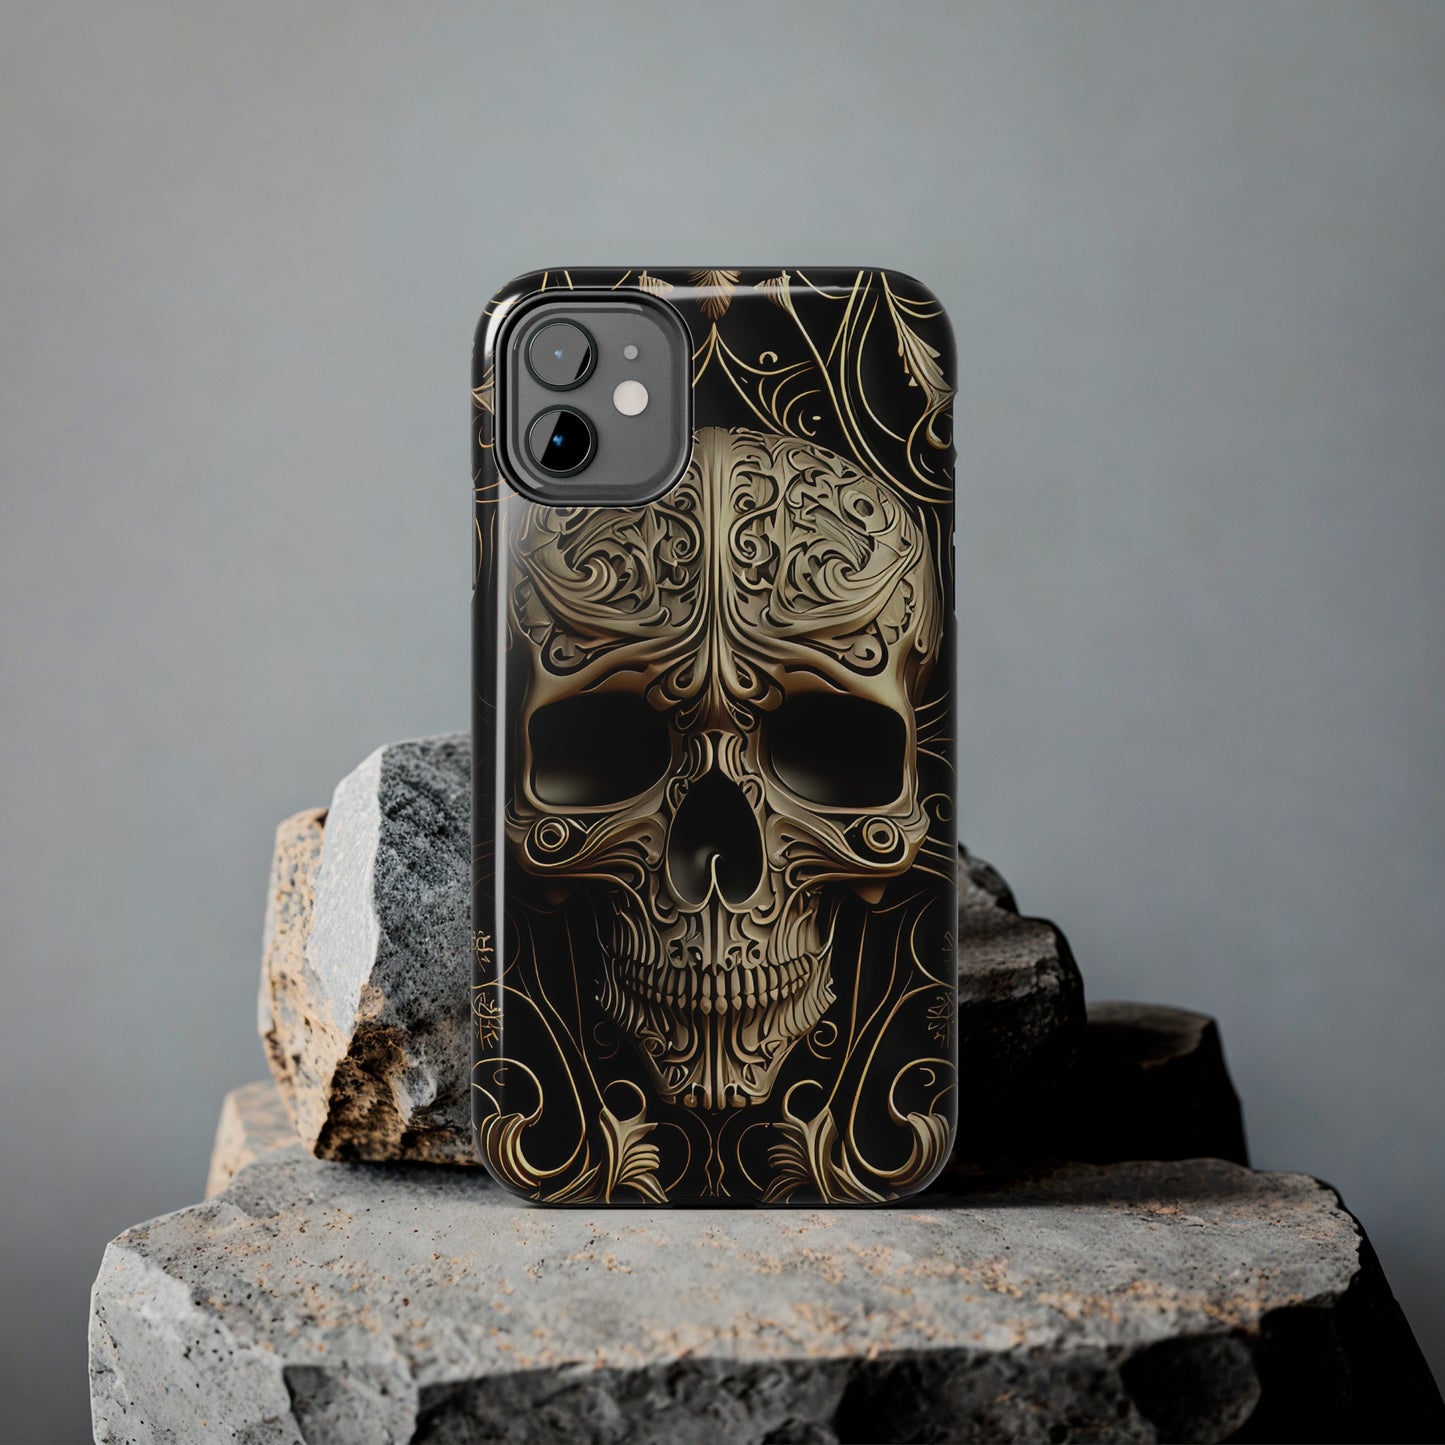 Metallic Chrome Skulls and Classic Designed 8 Tough Phone Cases